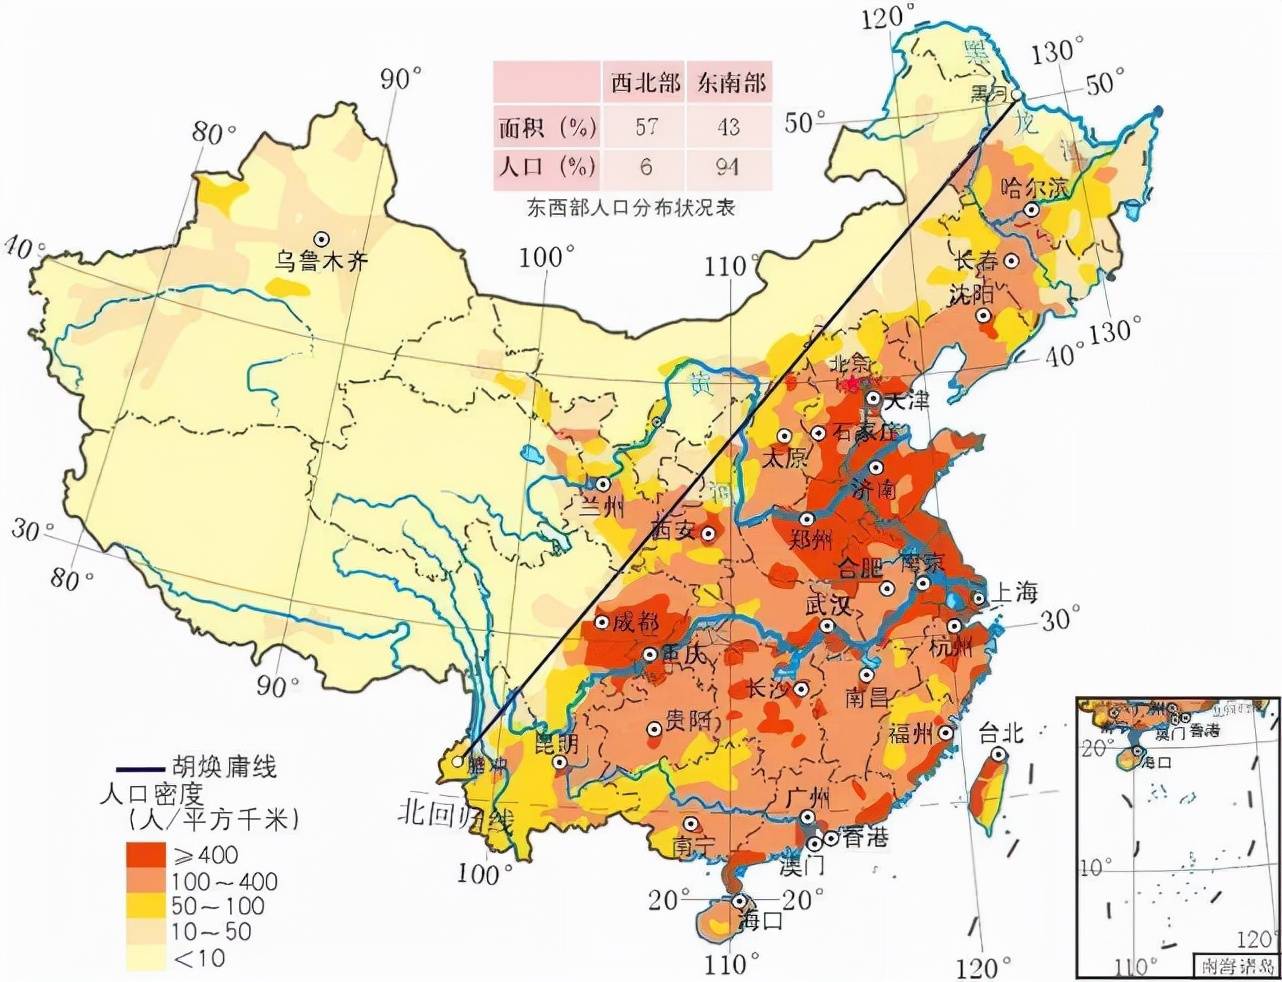 人口密度图中国的人口分布中主要在中国的中东部,也就是著名的胡焕庸